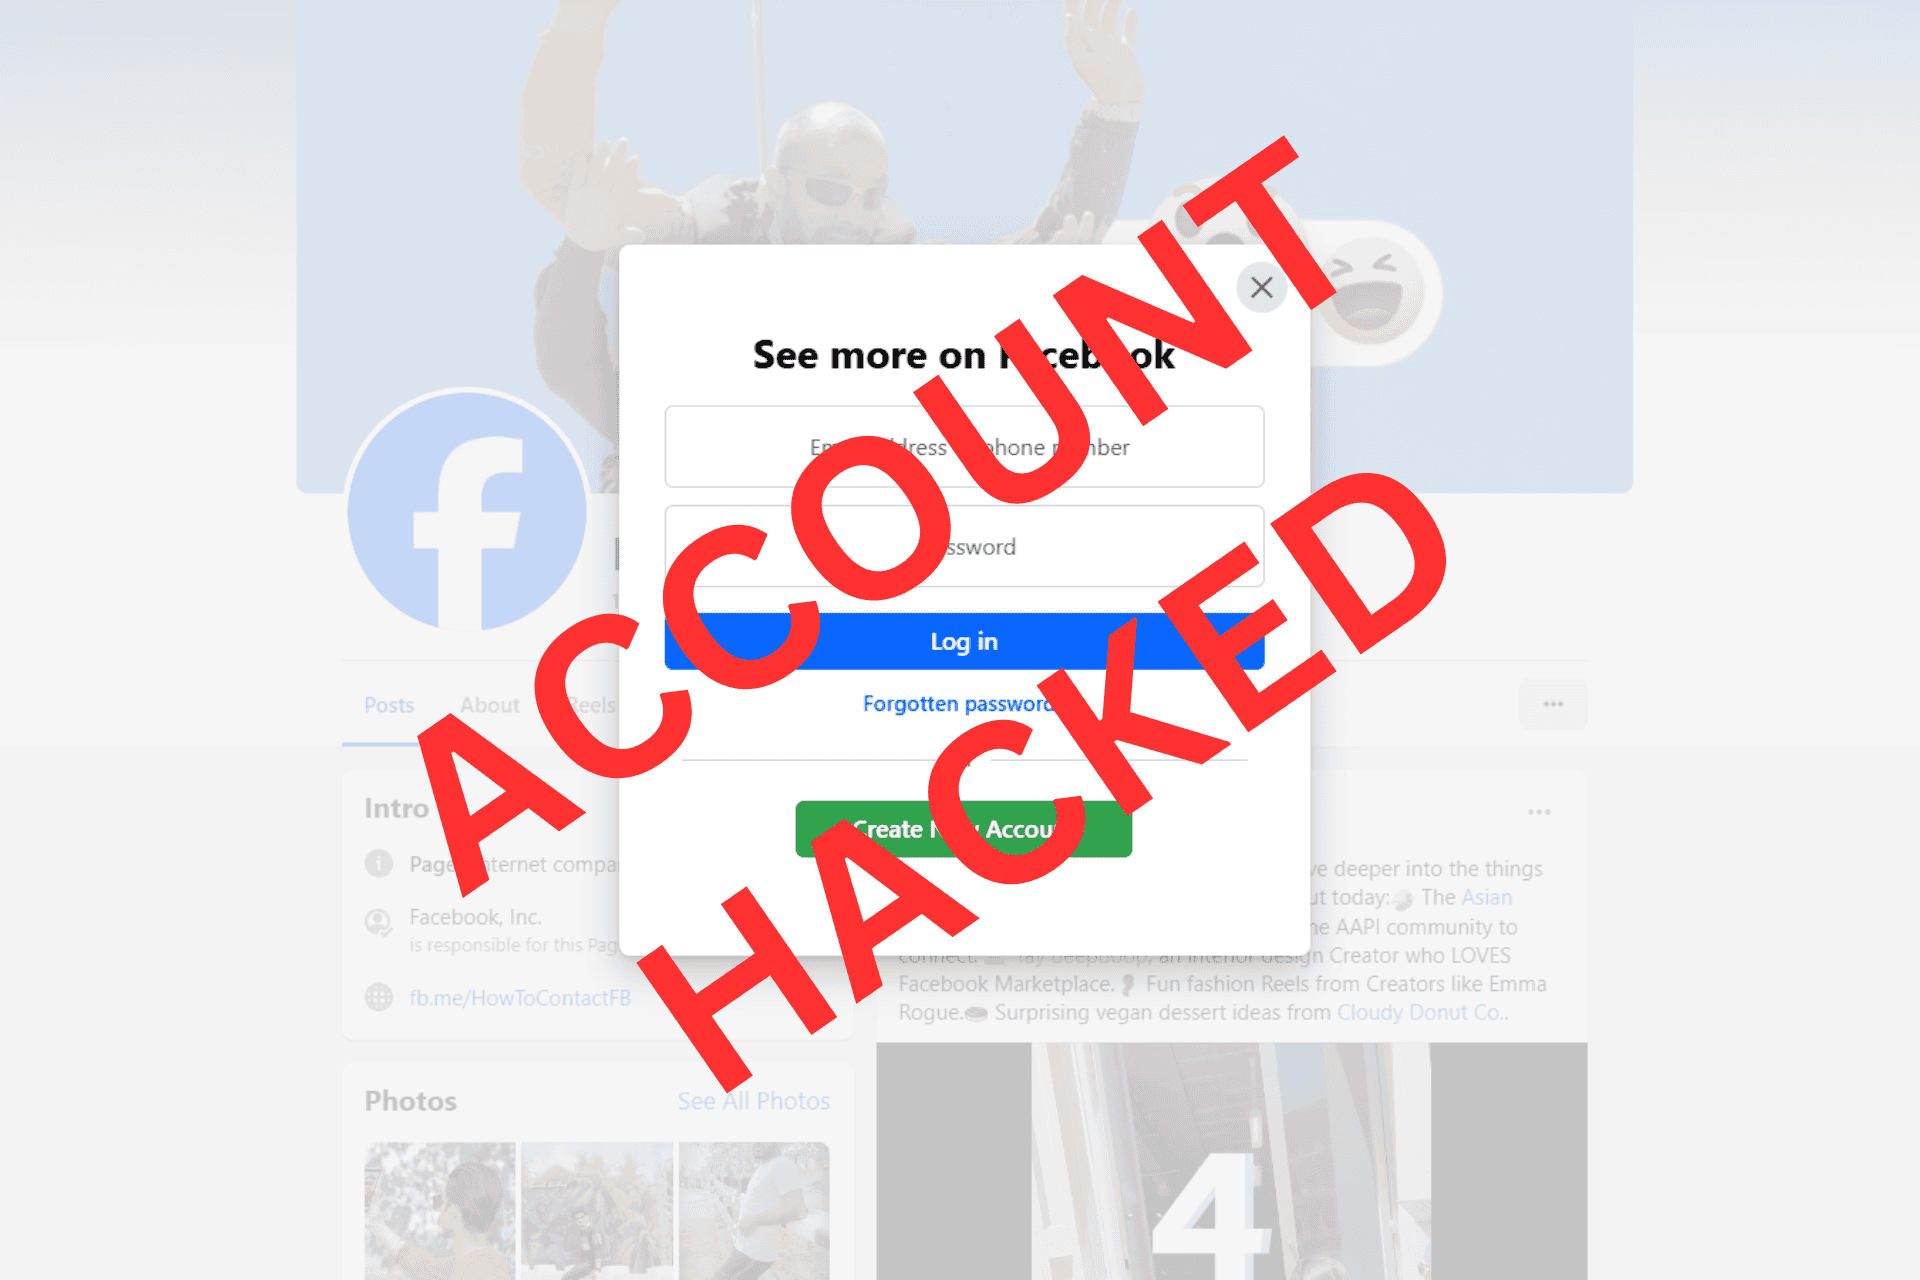 facebookový účet napadený e-mail a telefon se změnily